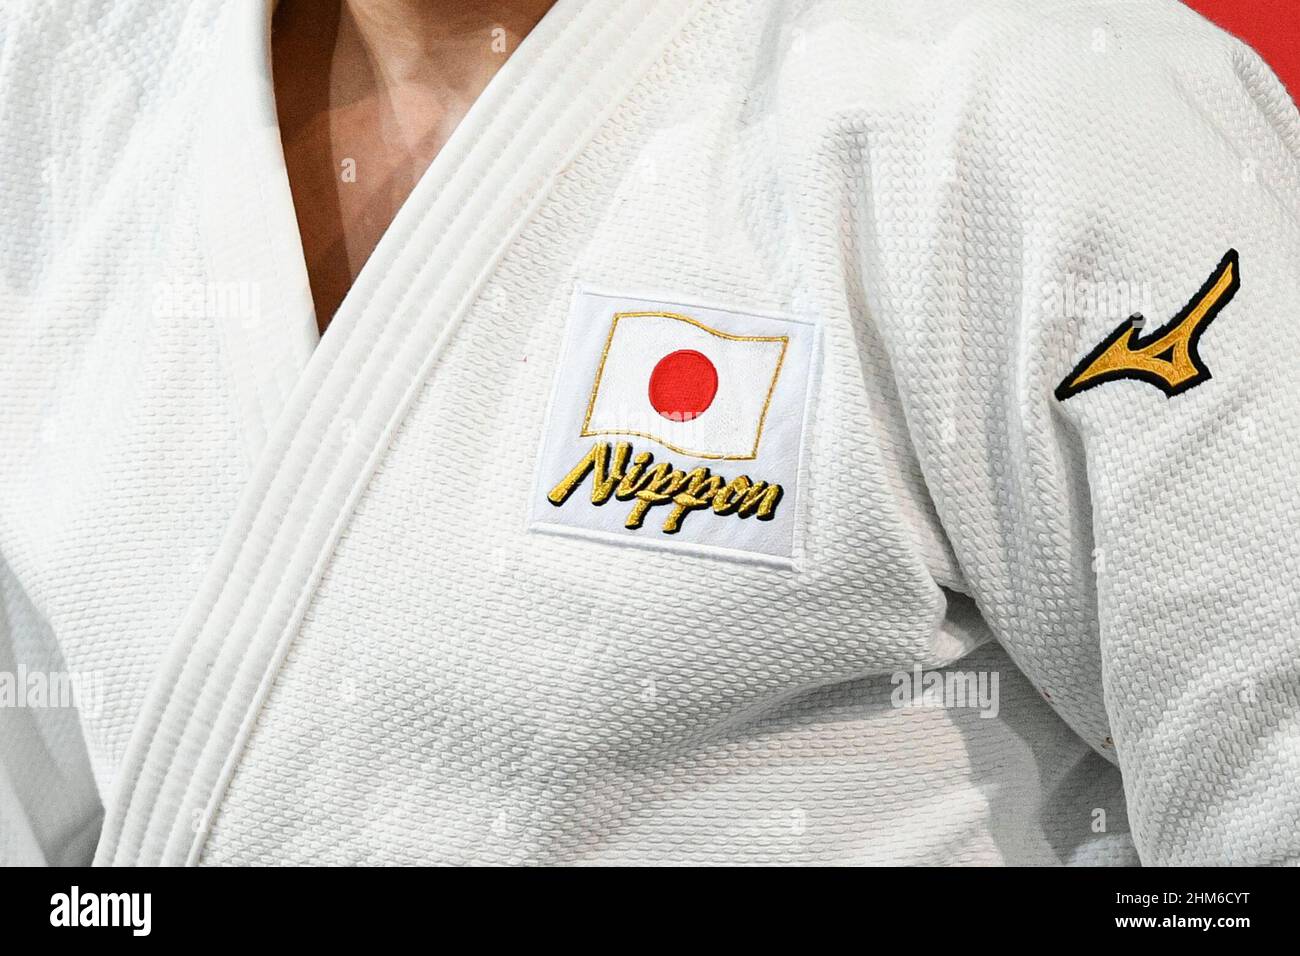 سائح استعماري محدد kimono judo picture - readywrita.com